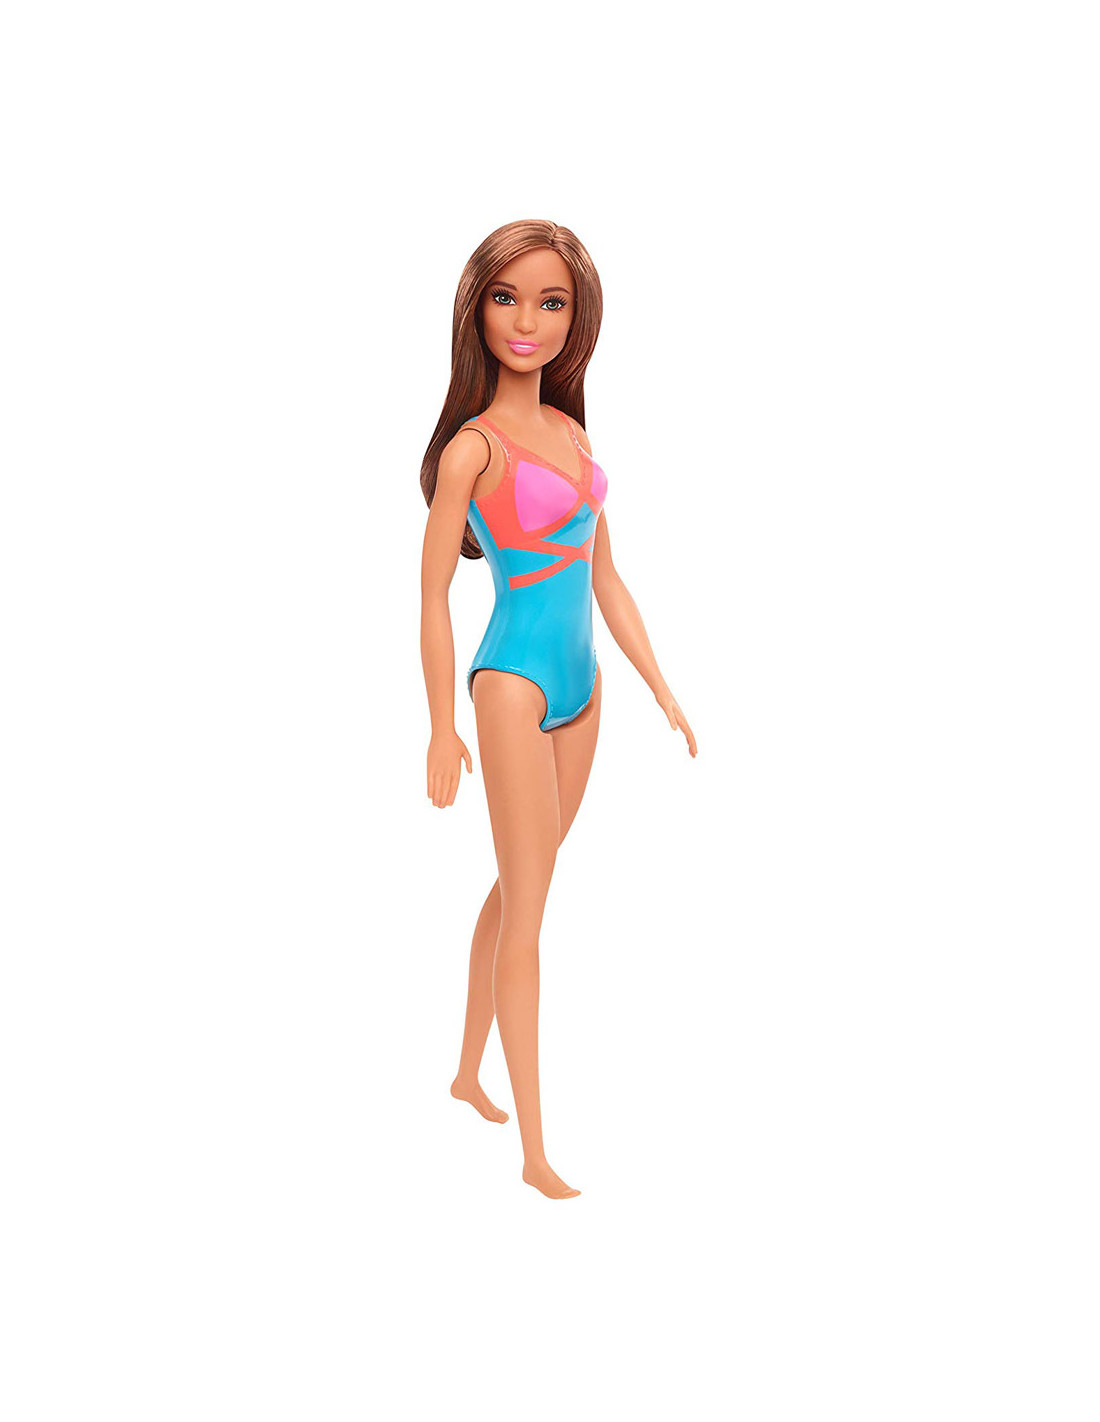 Sötétbarna hajú Barbie baba színes fürdőruhában